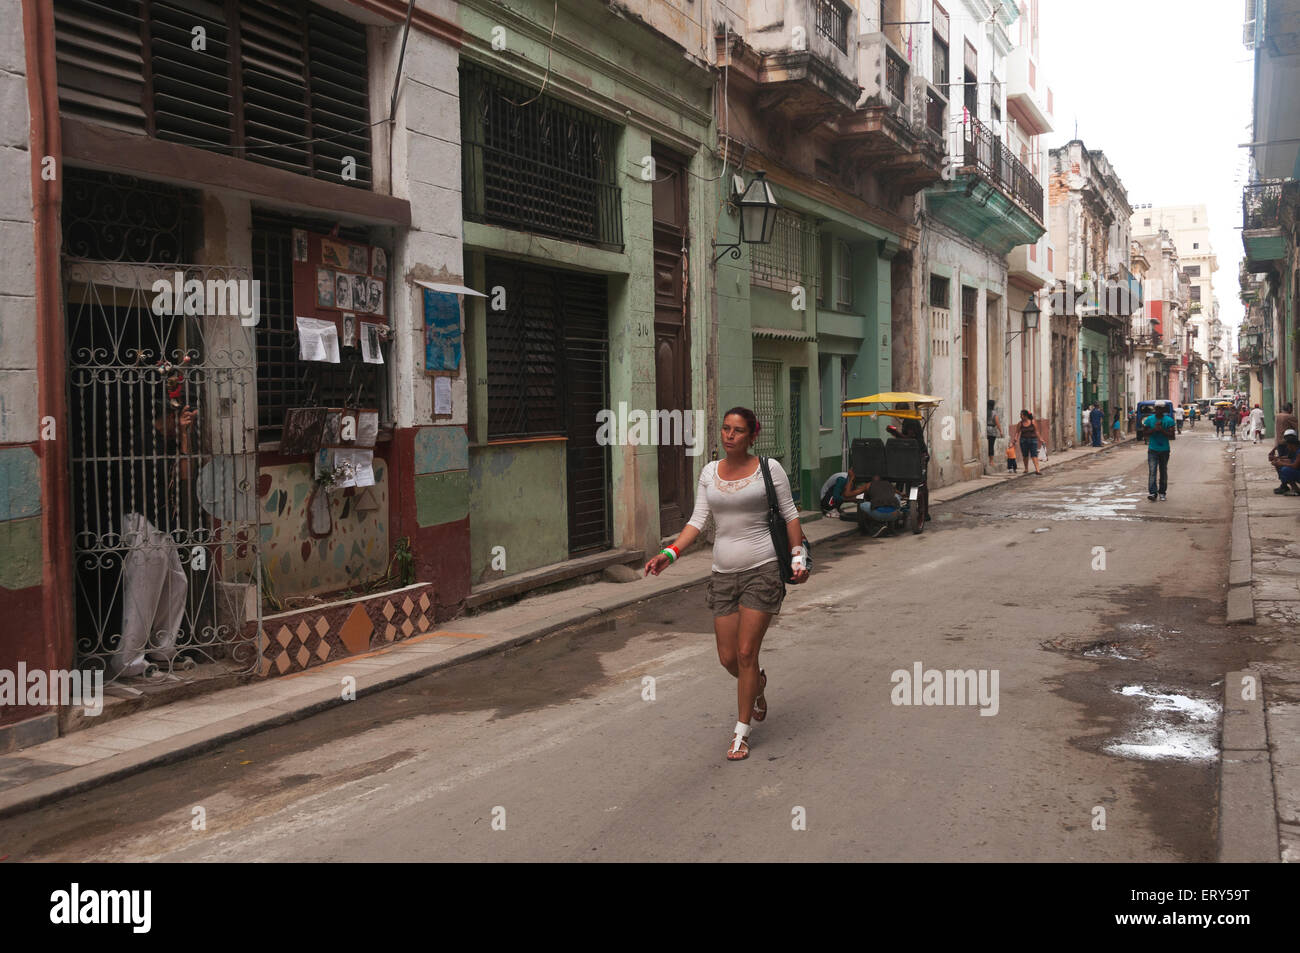 Elk224-1355 Cuba, Havana Vieja, non-renovated street scene Stock Photo